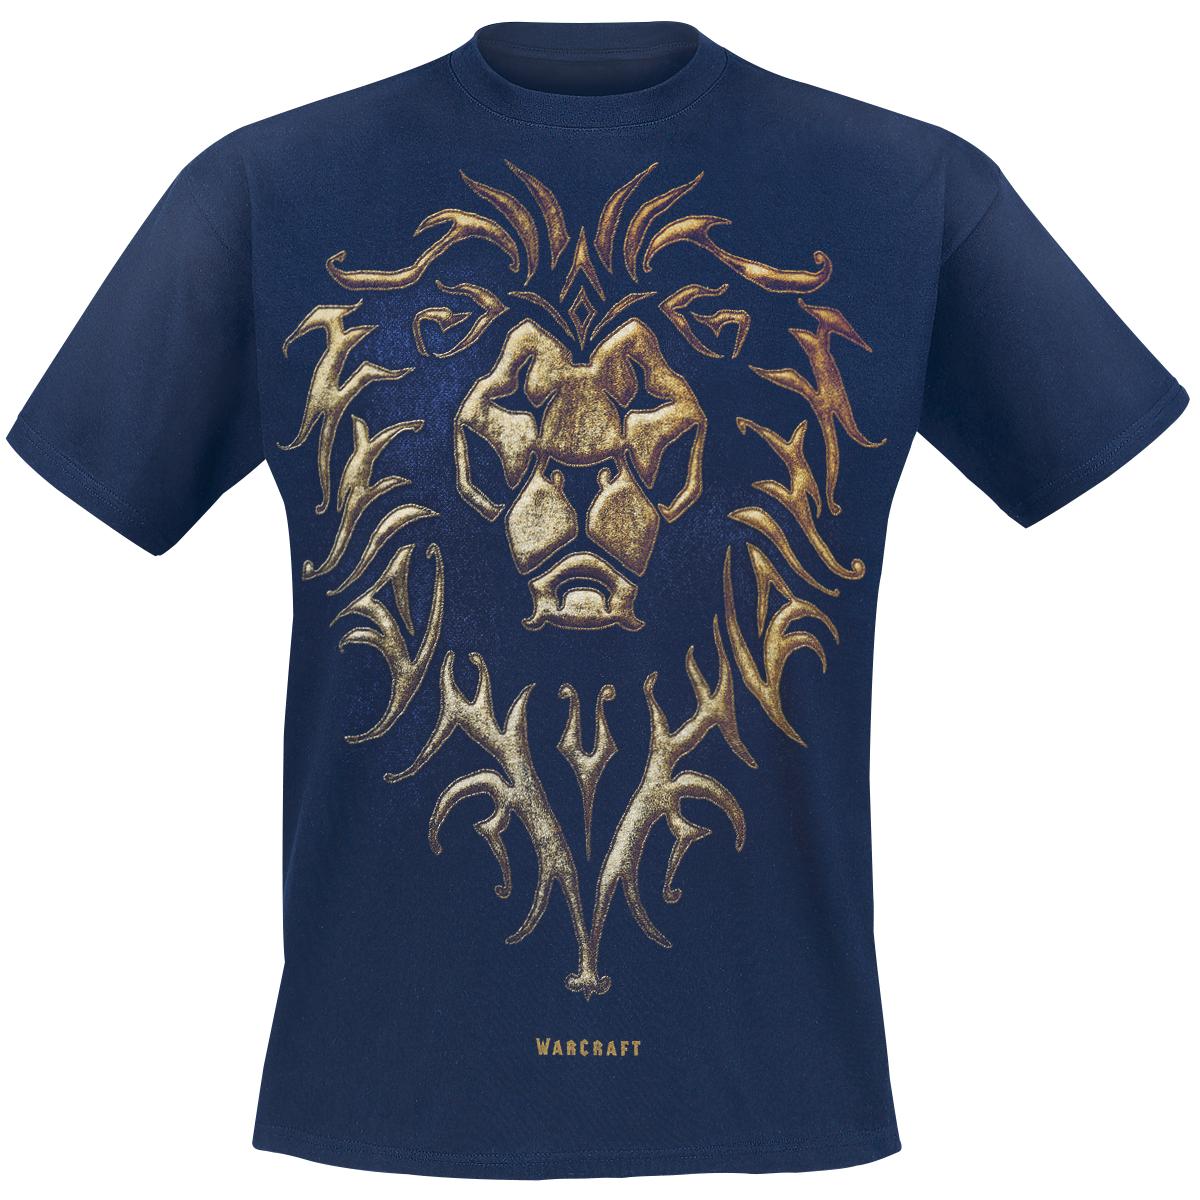 Alliance Emblem T-shirt Design tee